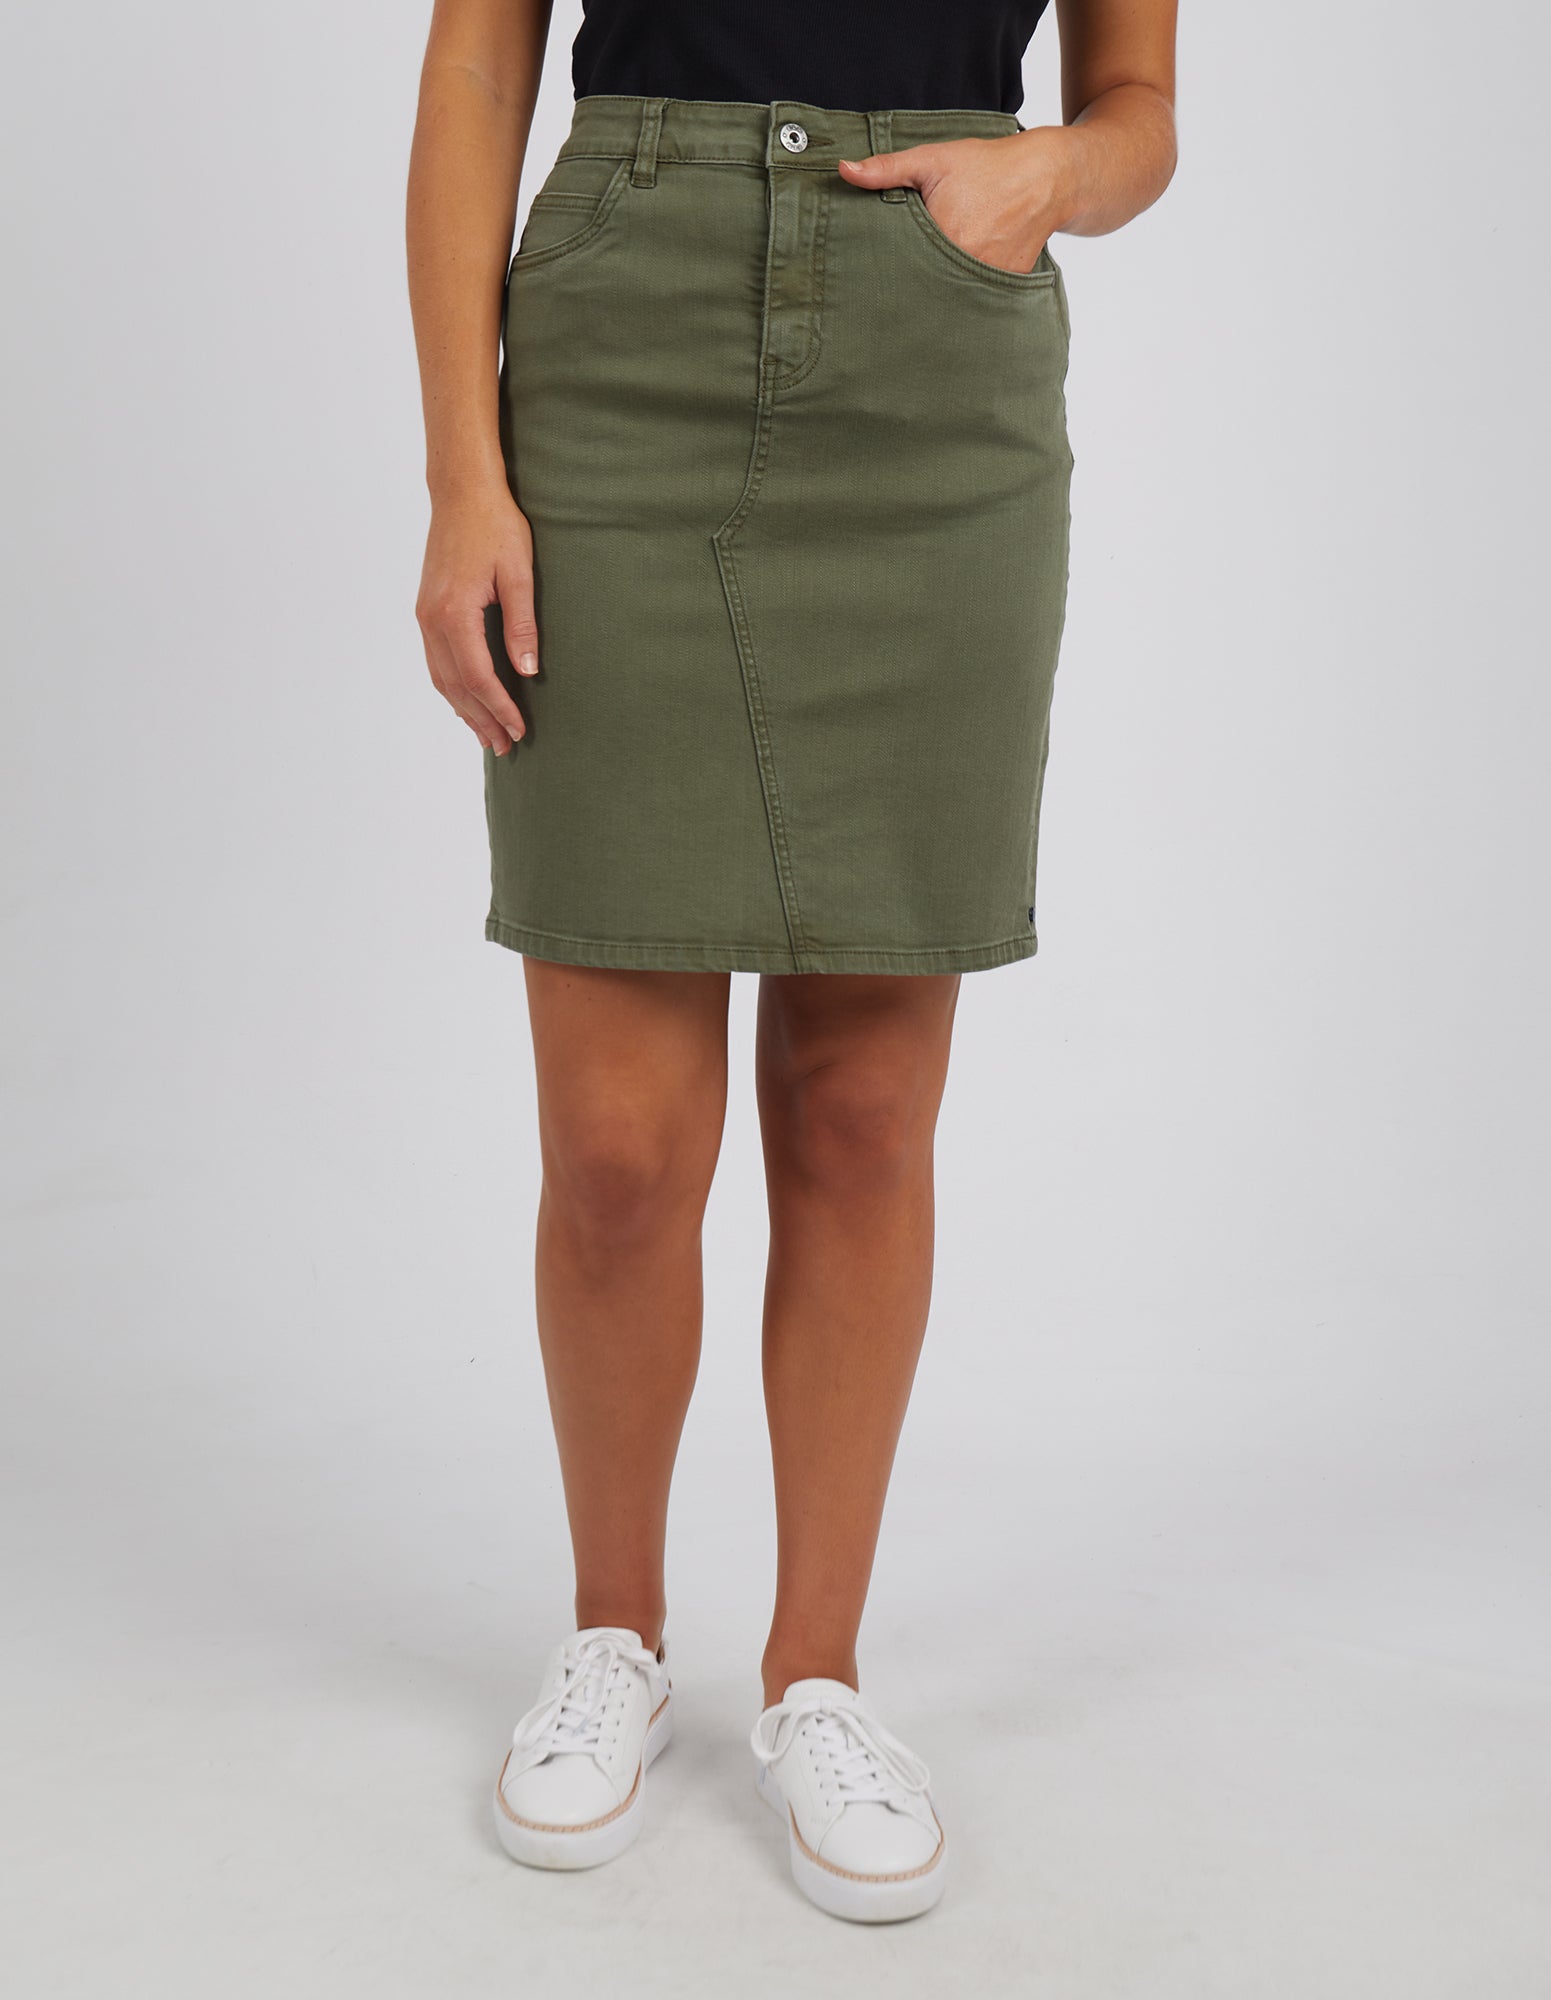 SHEIN Flap Pocket Side Cargo Denim Skirt | SHEIN IN